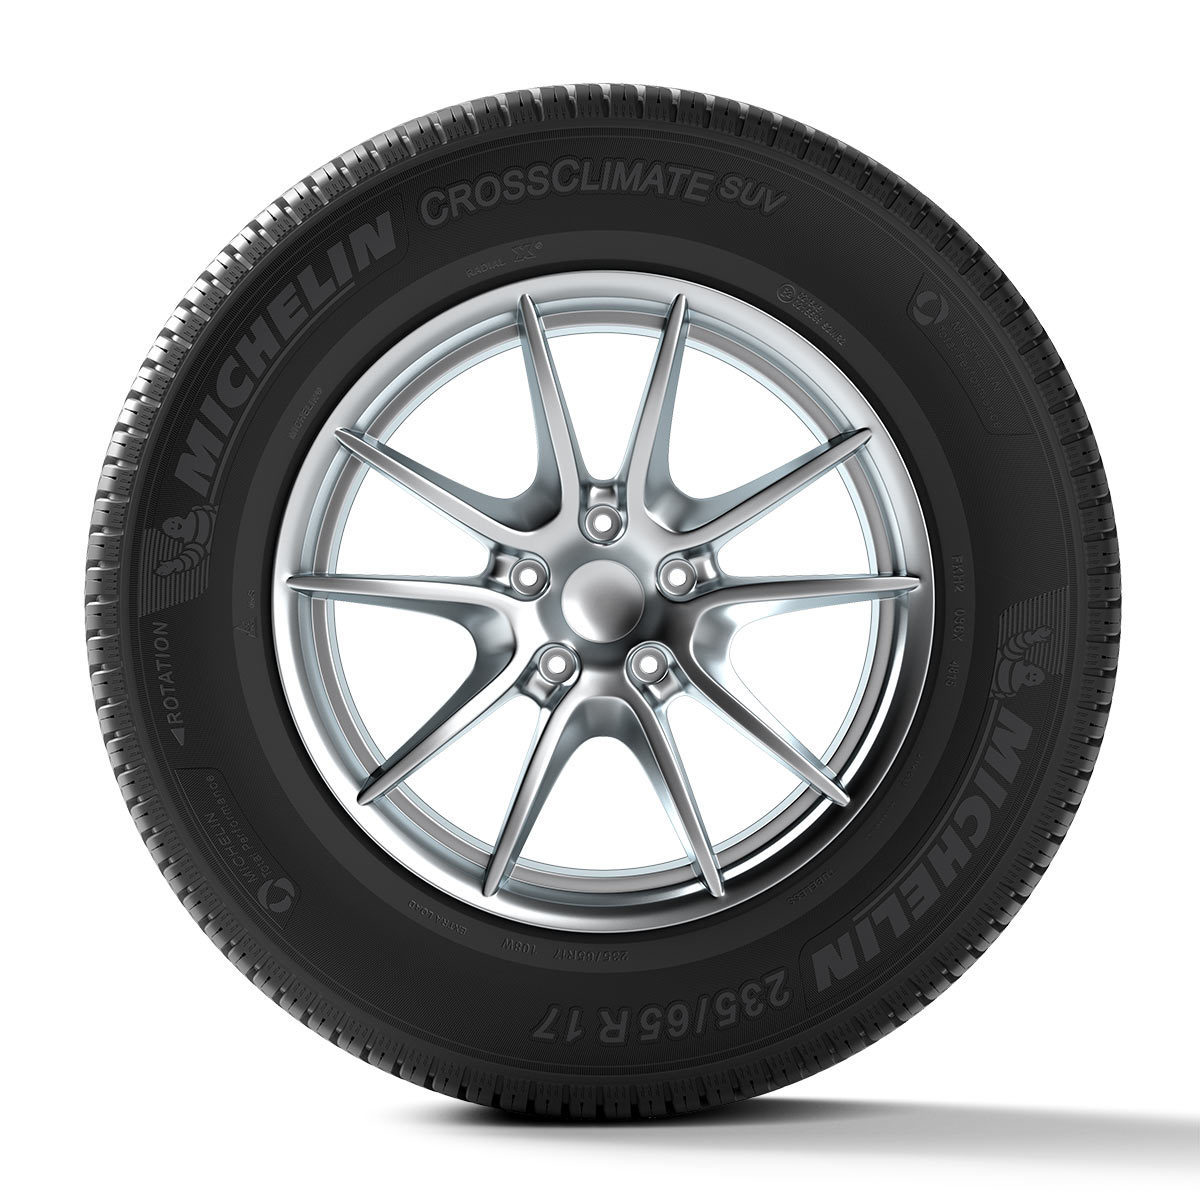 Michelin 245/60 R18 (105)H CROSSCLIMATE SUV